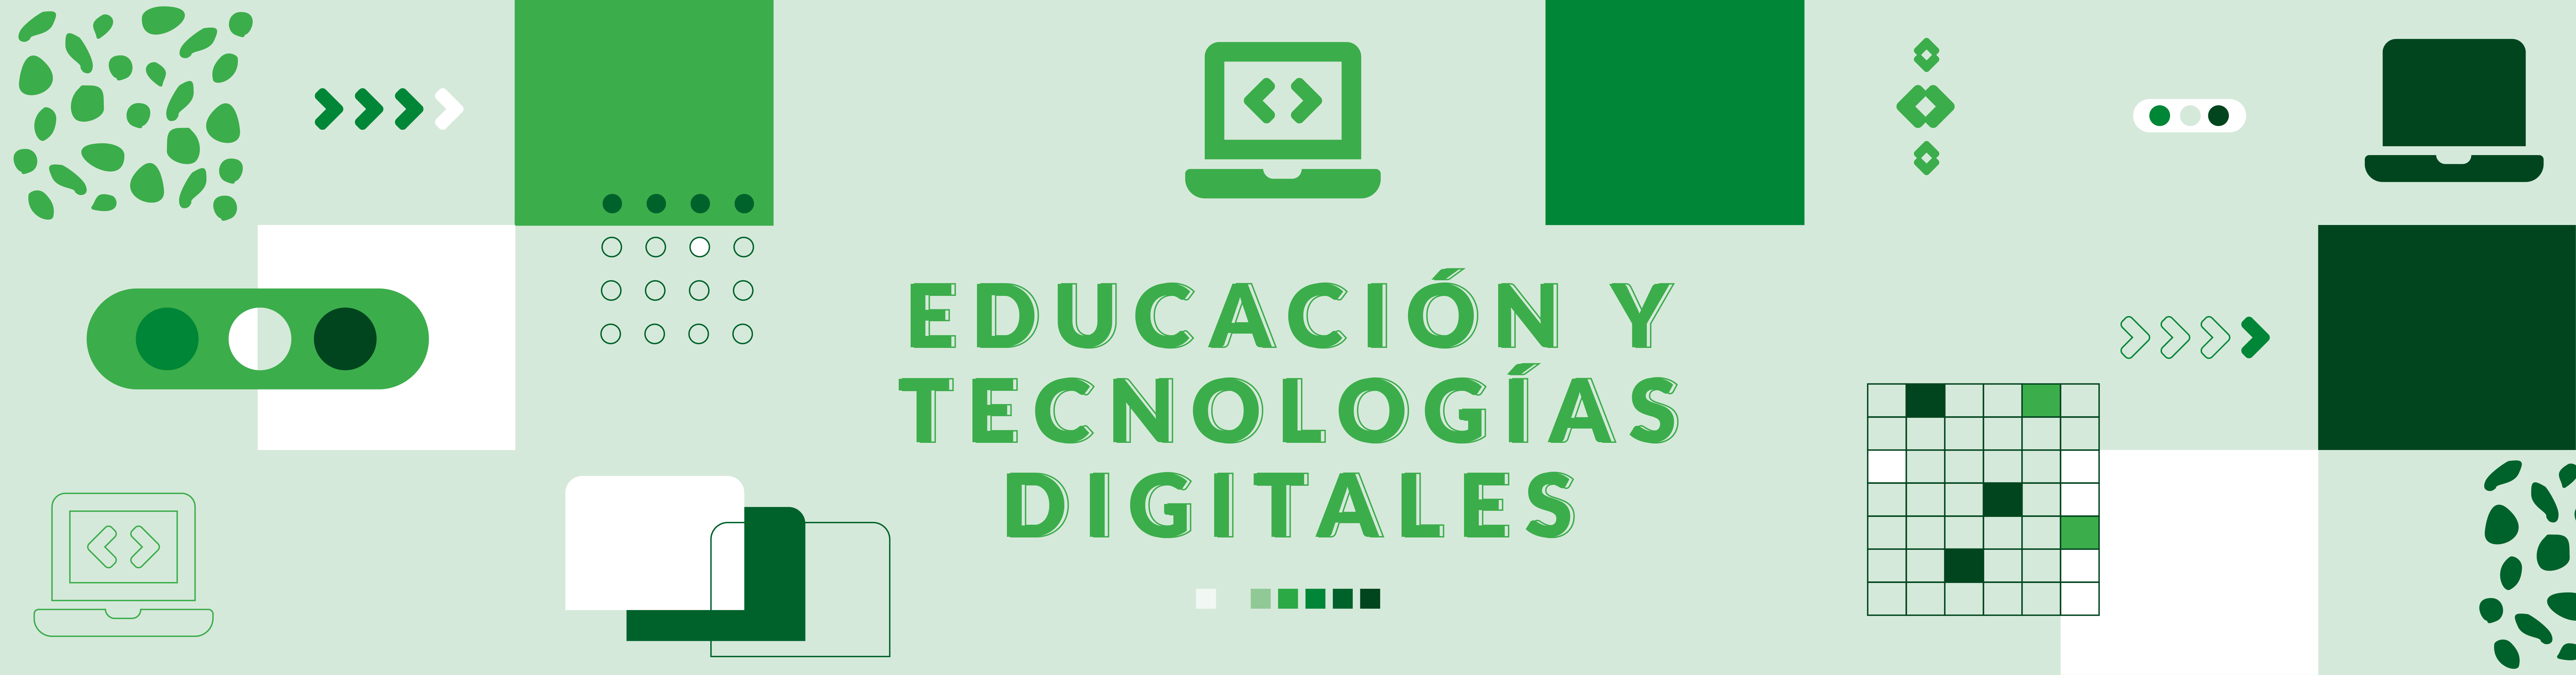  Educación y tecnologías digitales